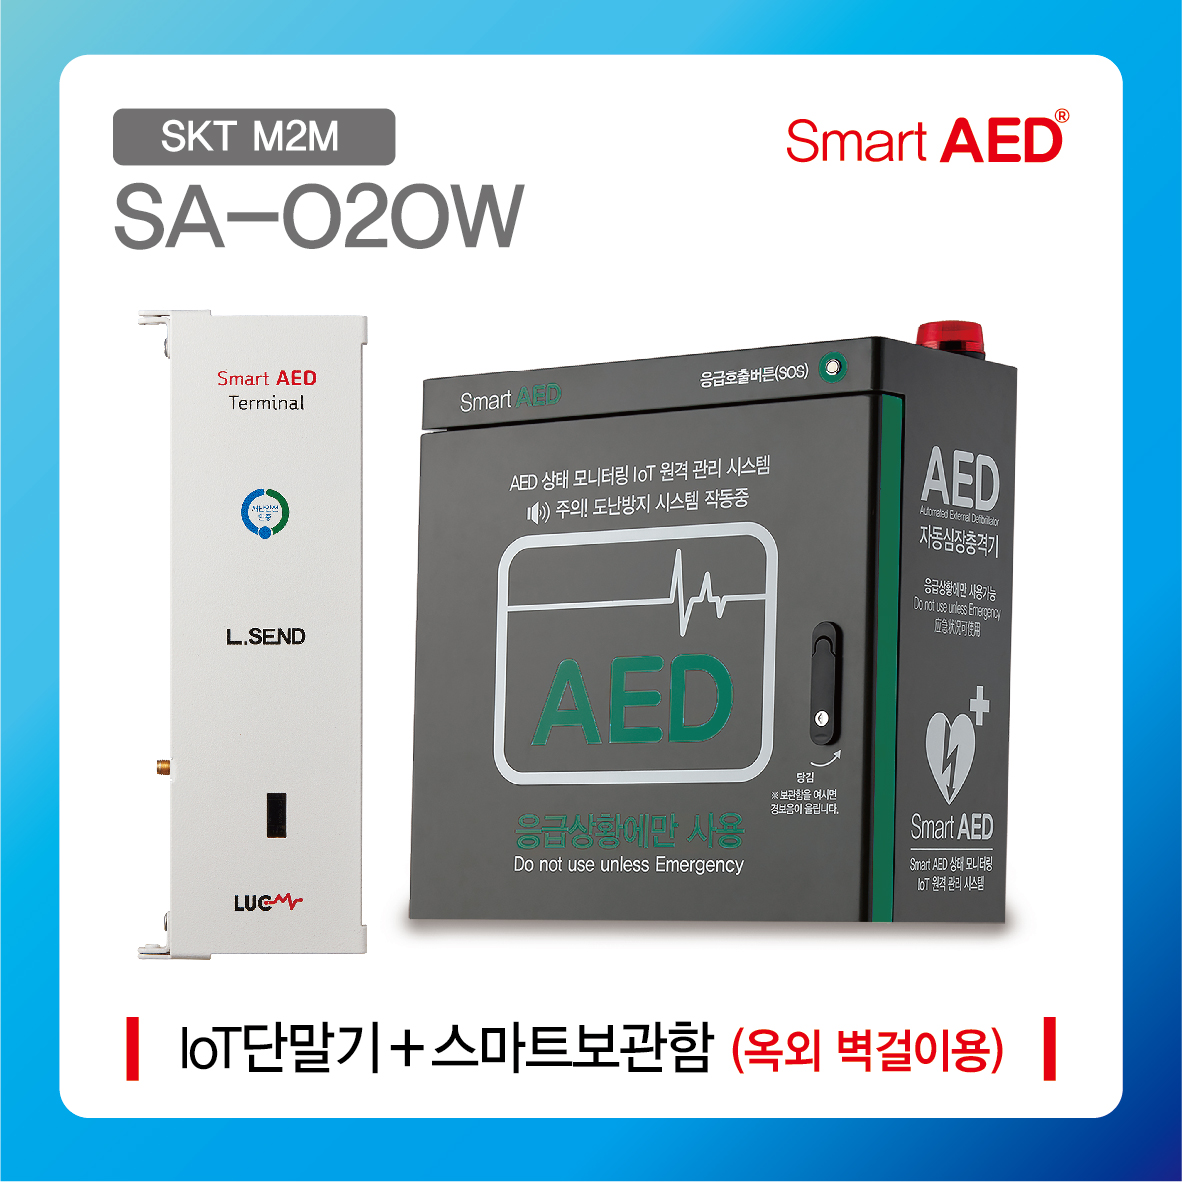 [ SA-O2OW ] 스마트 AED 통합모니터링 장치 및 보관함 (옥외 벽걸이형)